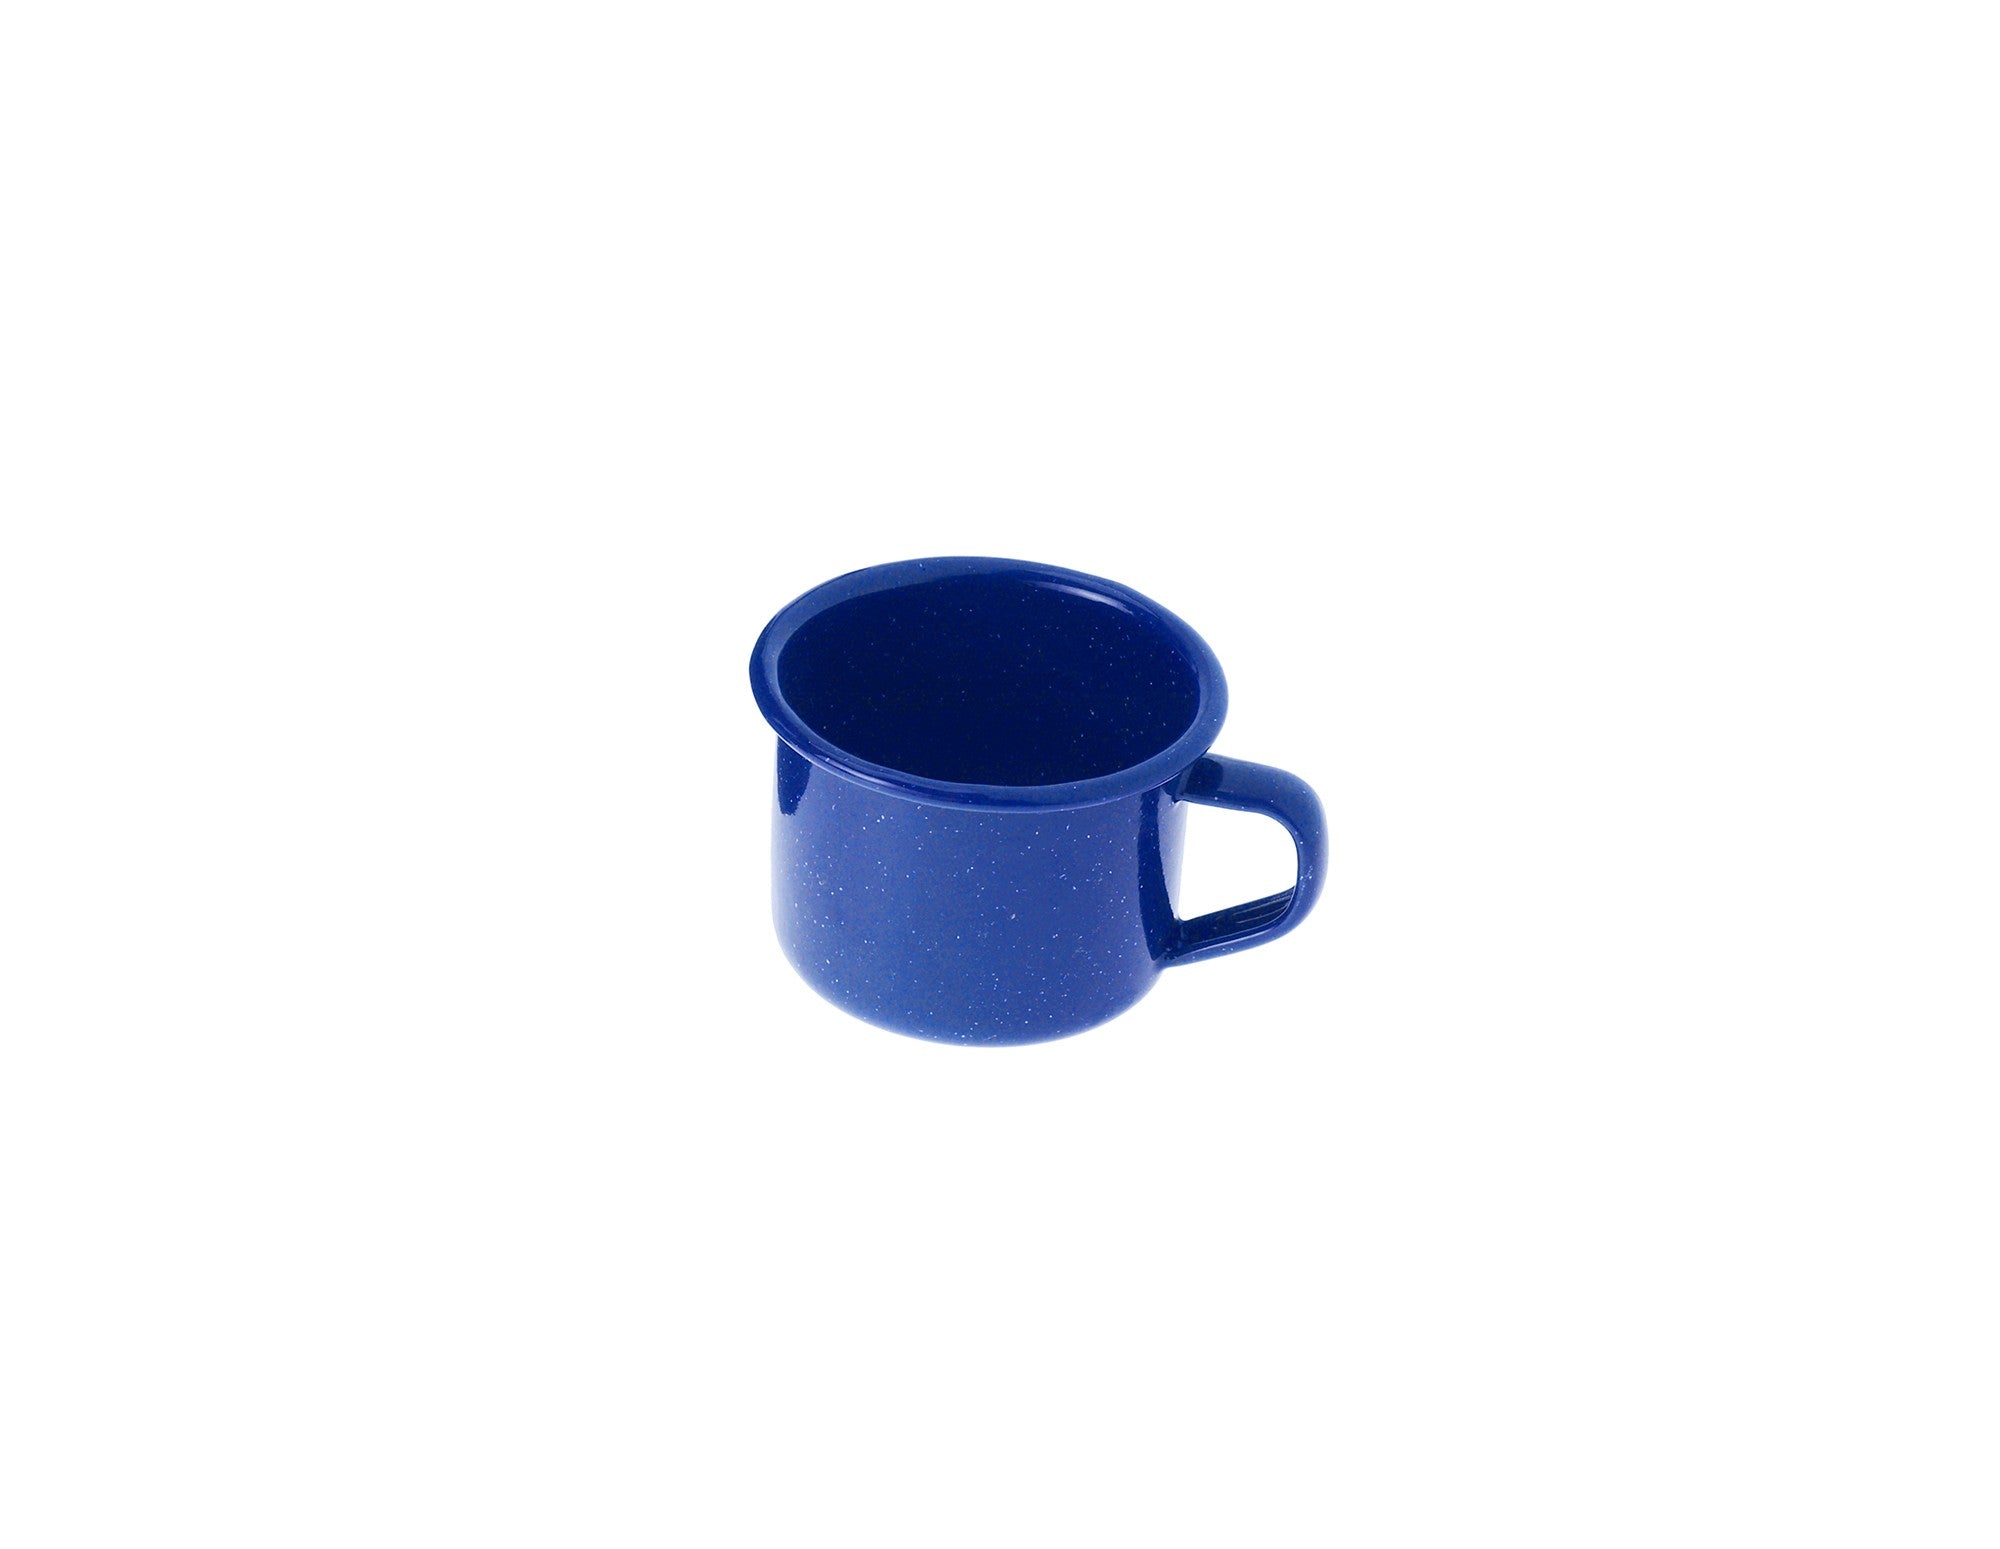 GoodGlassware Insulated Espresso Mugs (Set of 2)